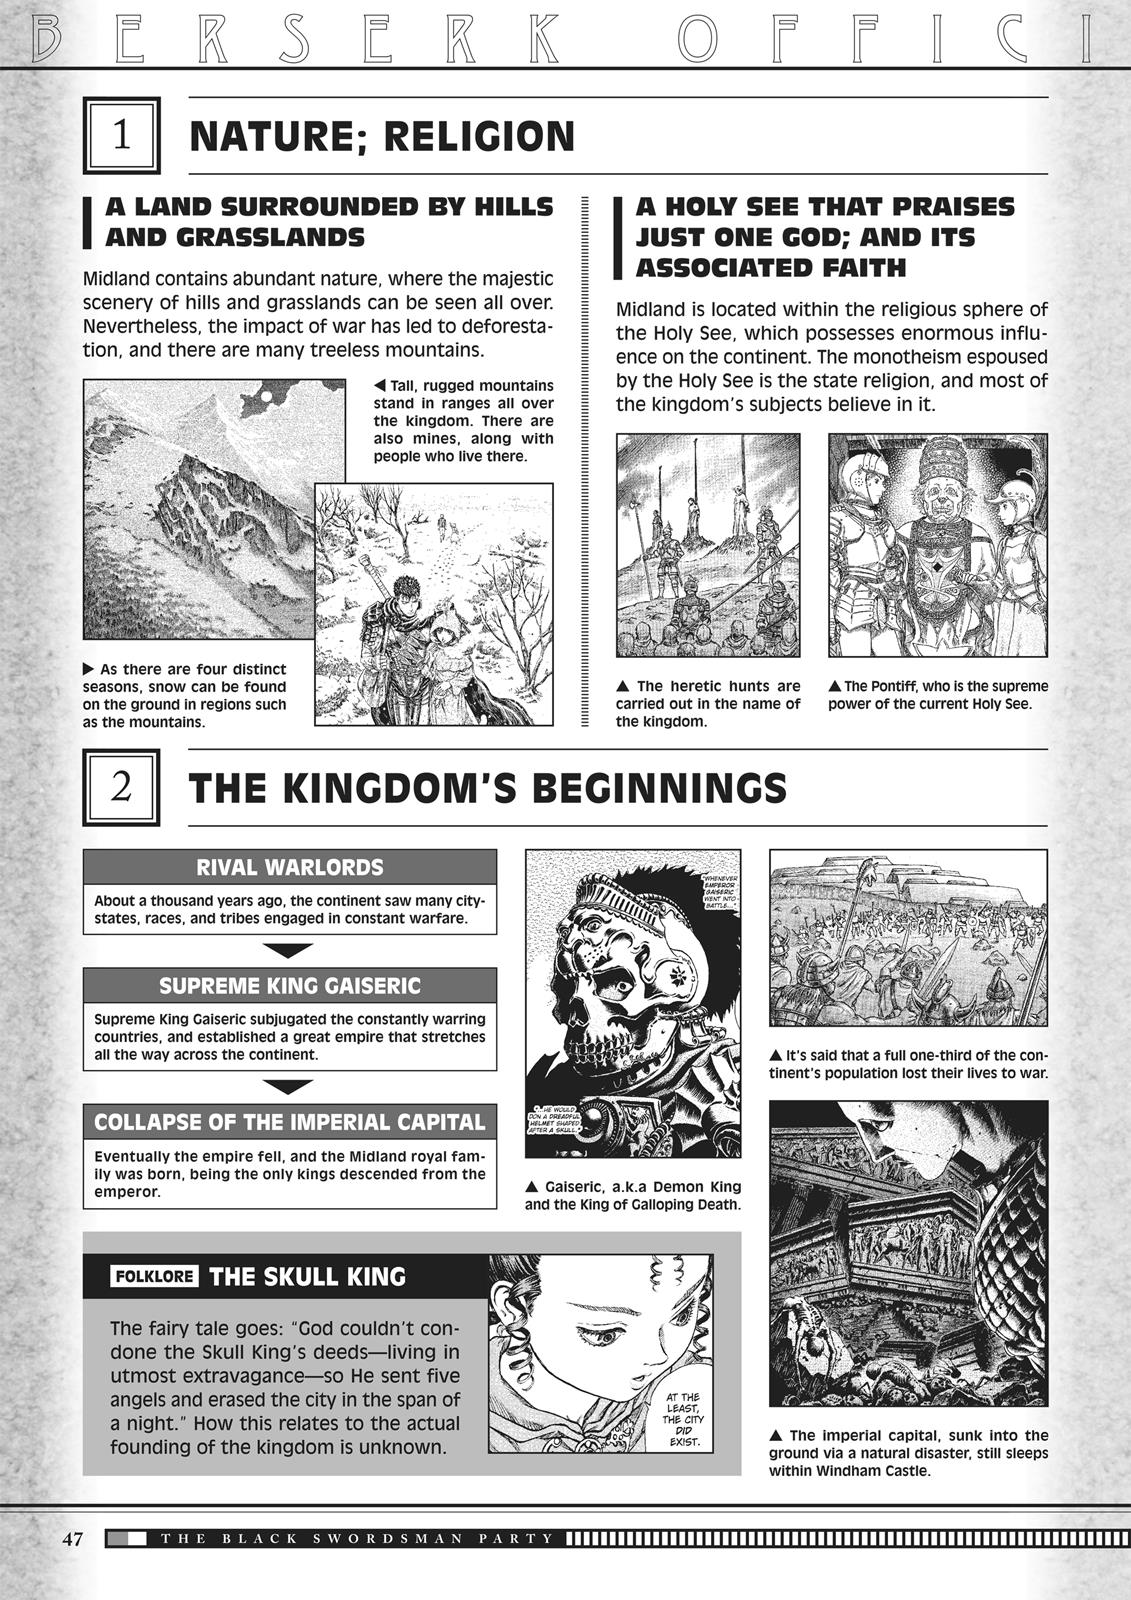 Berserk Manga Chapter 350.5 image 047